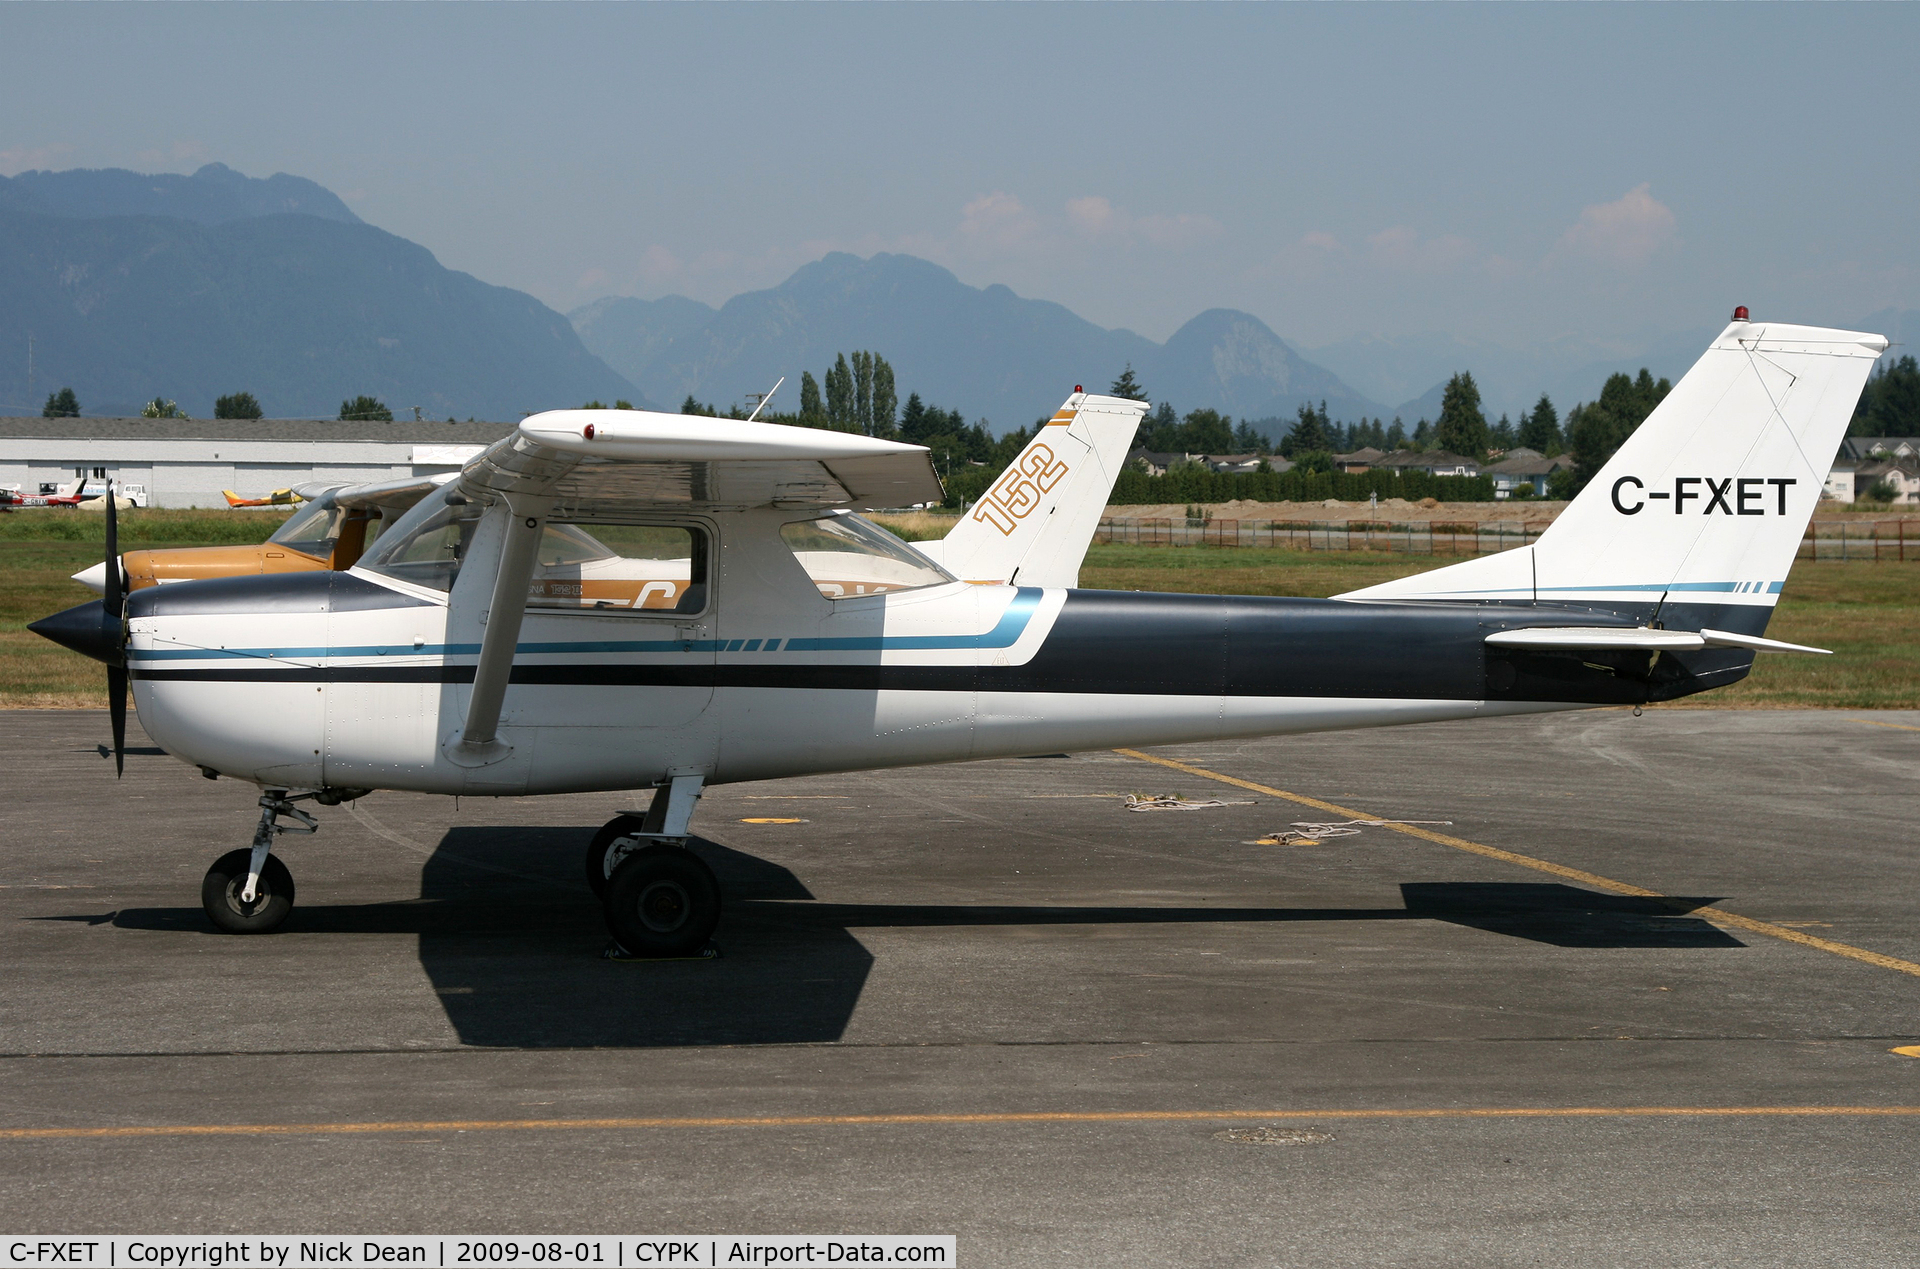 C-FXET, 1968 Cessna 150H C/N 15068515, CYPK